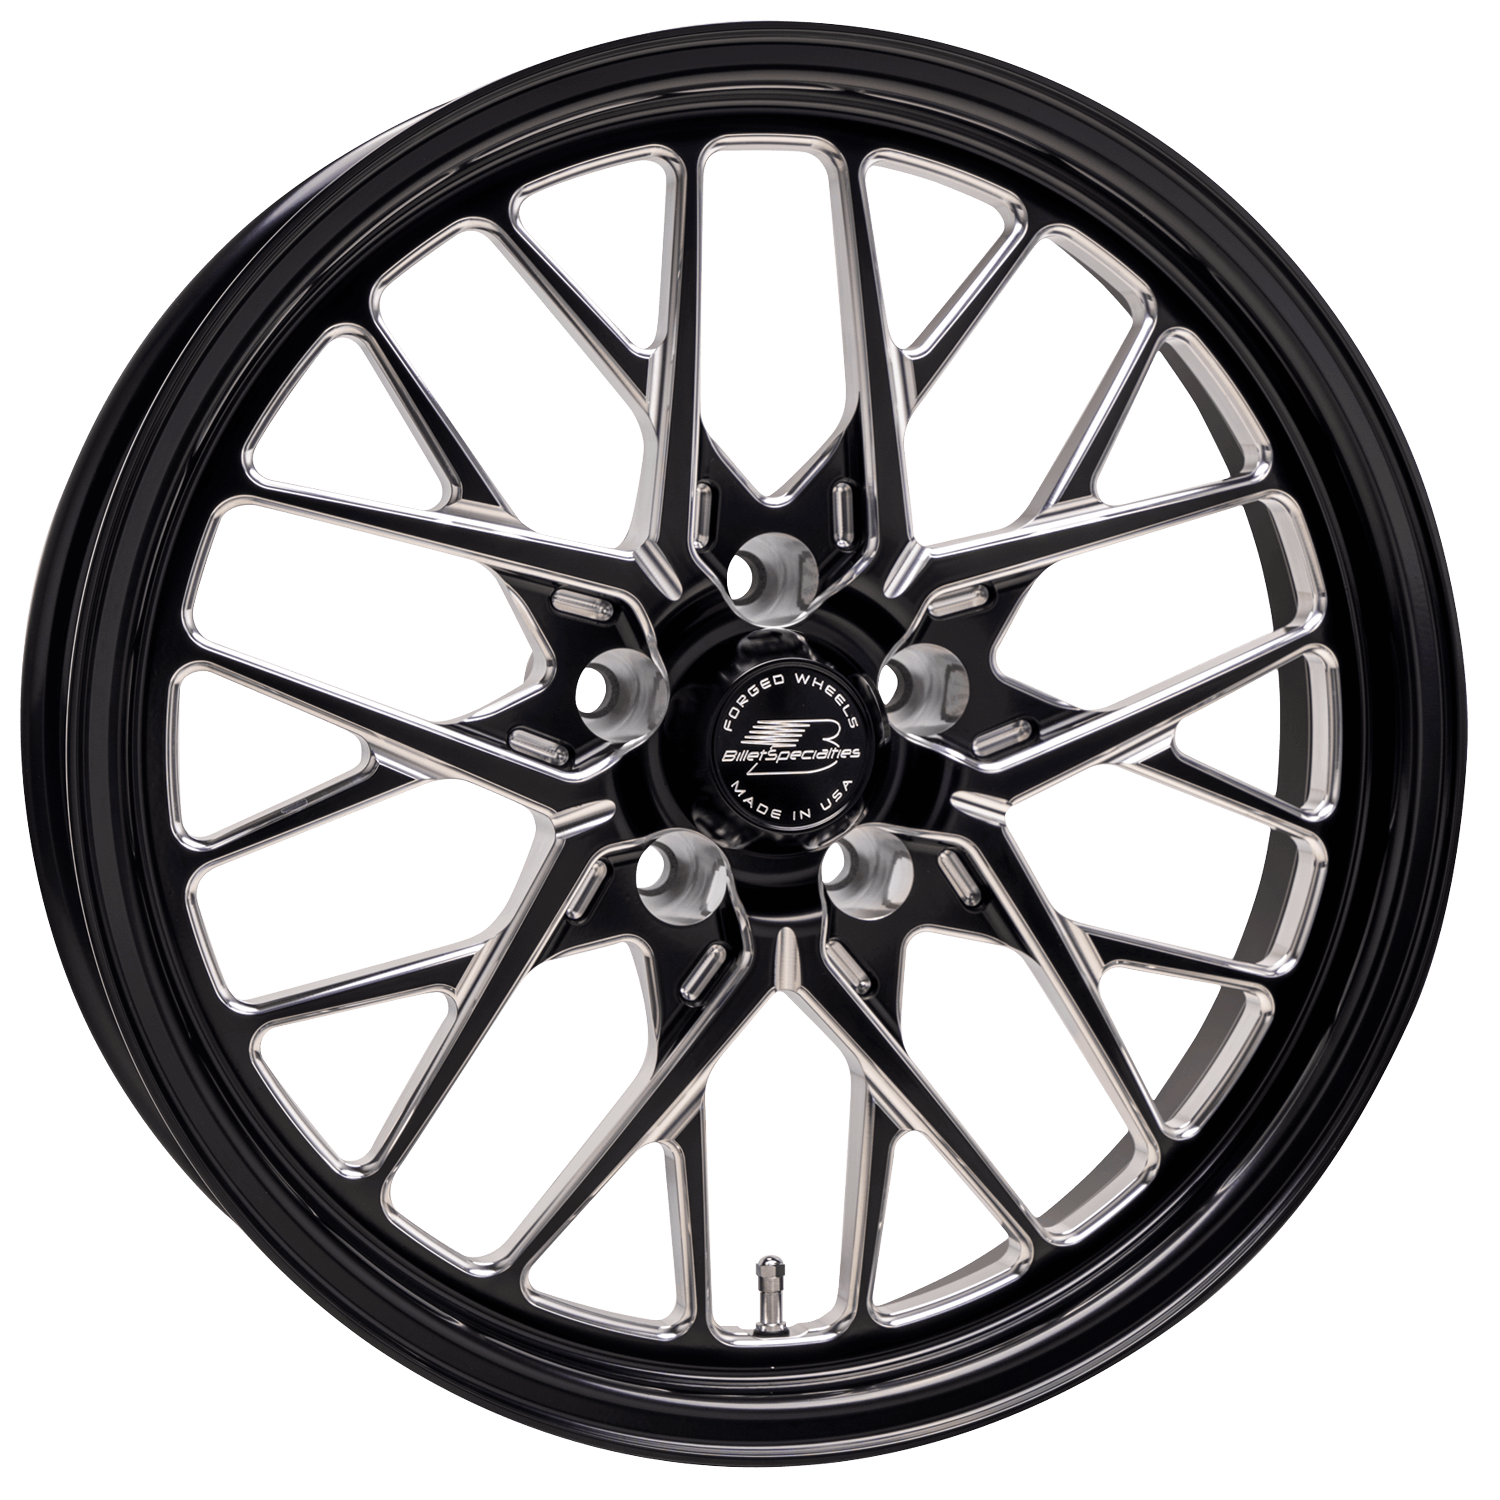 REDLINE Drag Pack Front Wheel, Size: 18" x 5", Bolt Pattern: 5" x 4.75", Offset: 61 mm [Black]